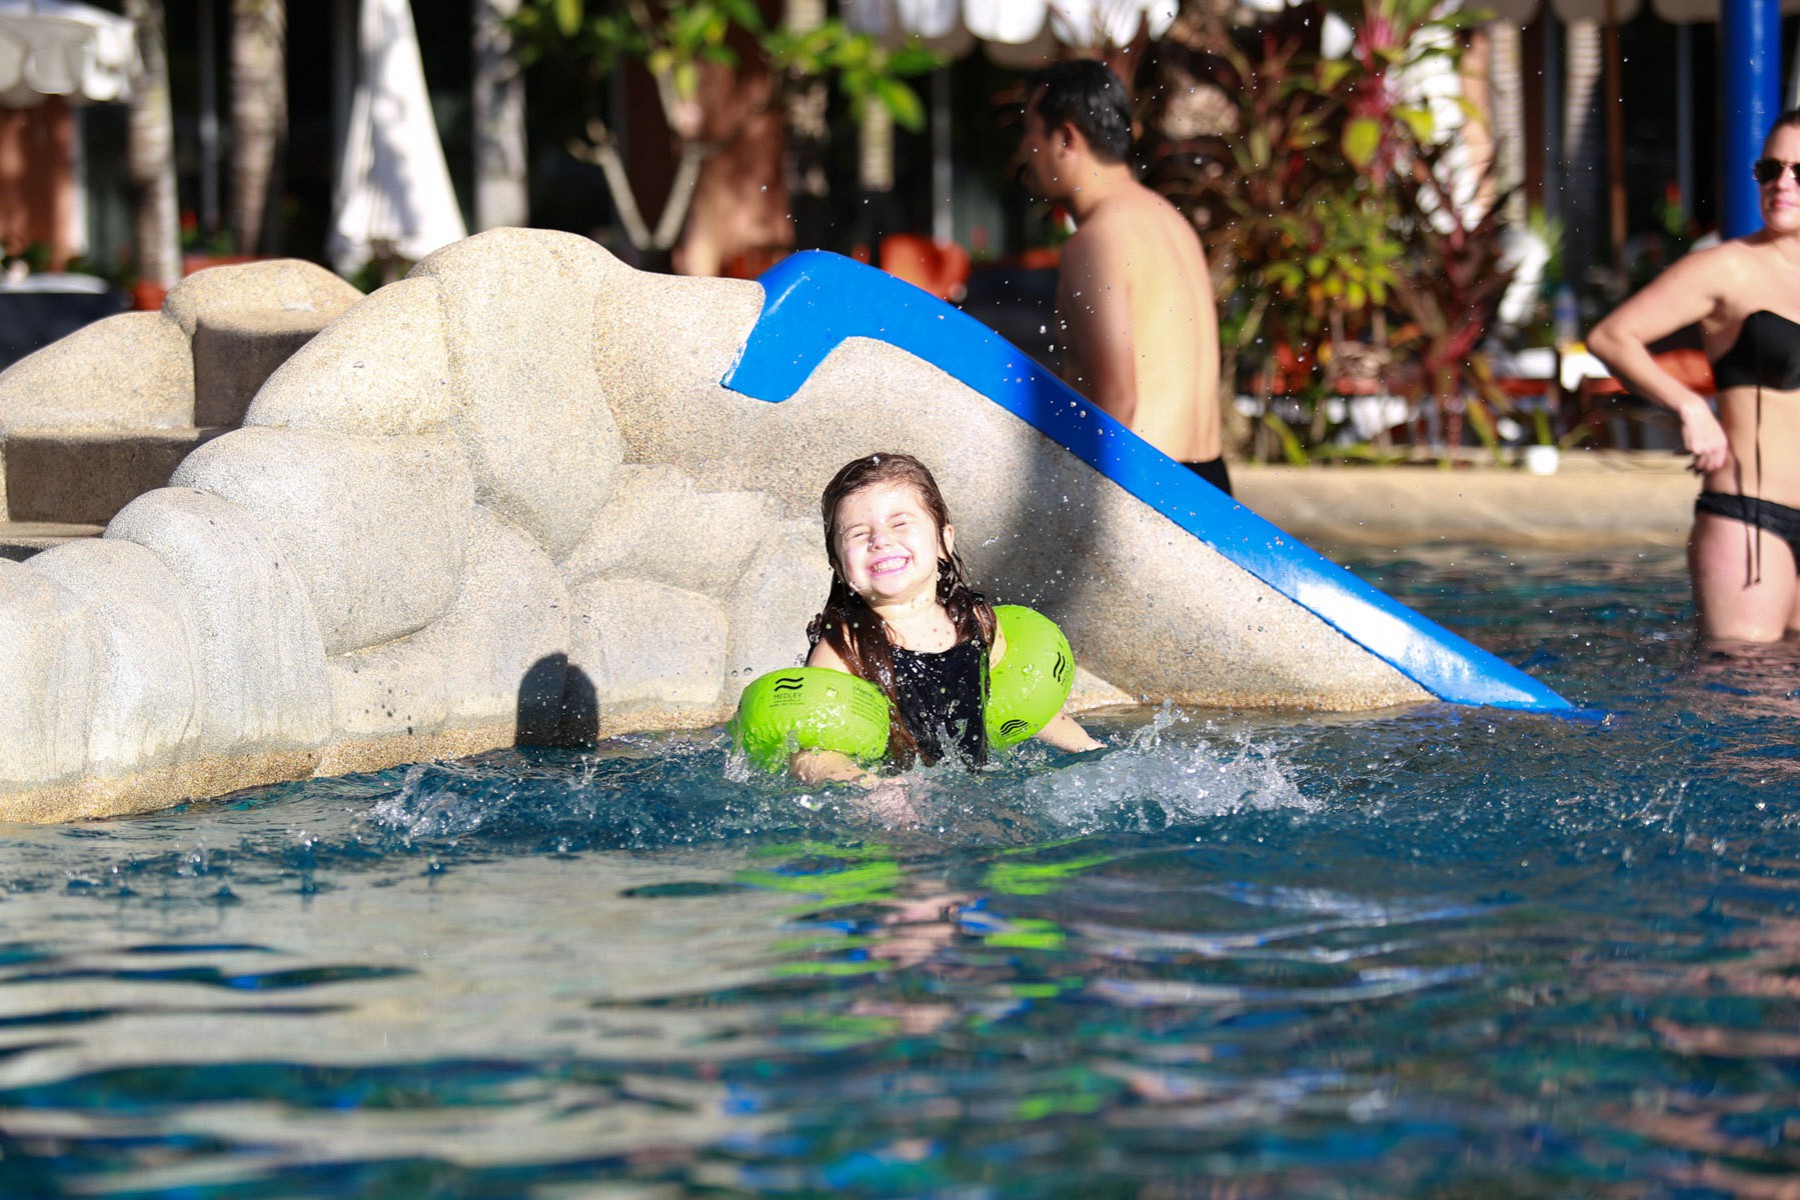 Kid's Pool at Phuket Orchid Resort & Spa